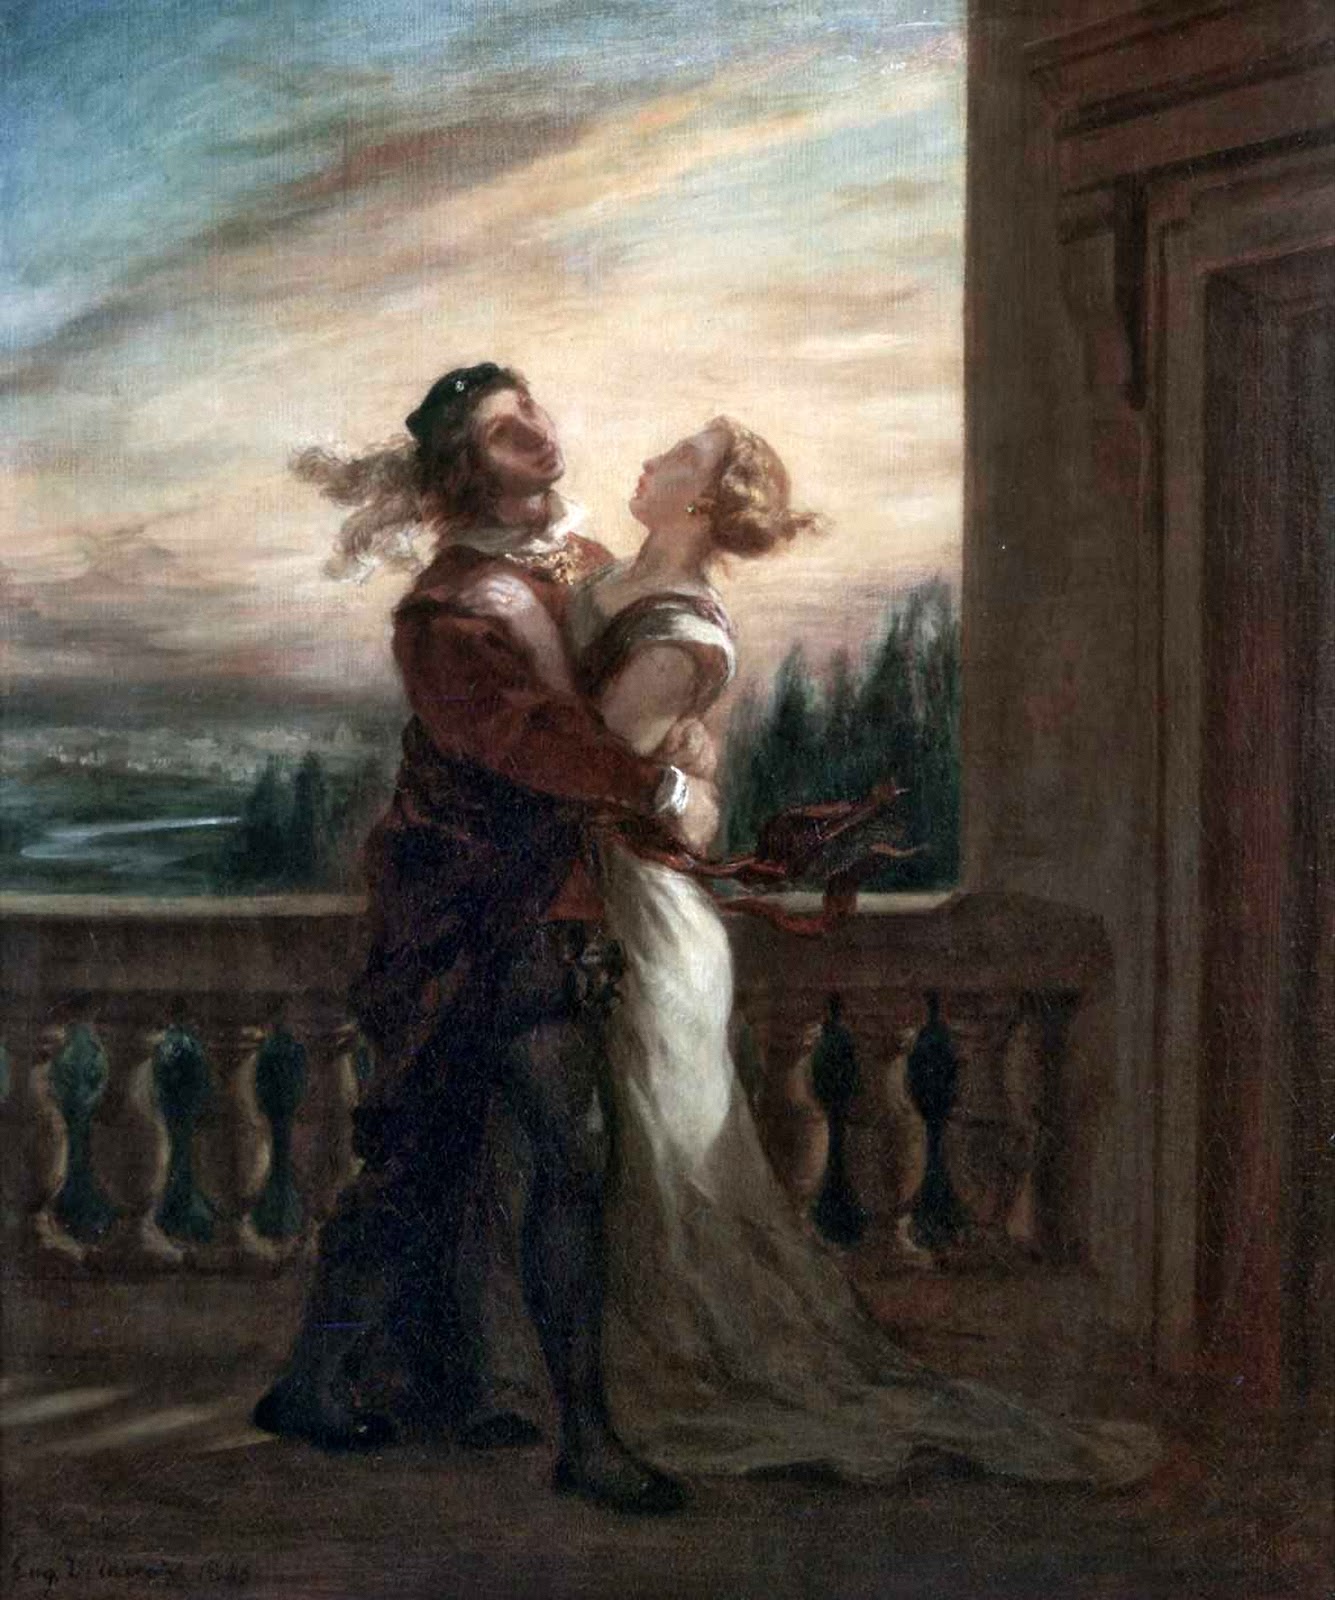 Eugene+Delacroix-1798-1863 (194).jpg